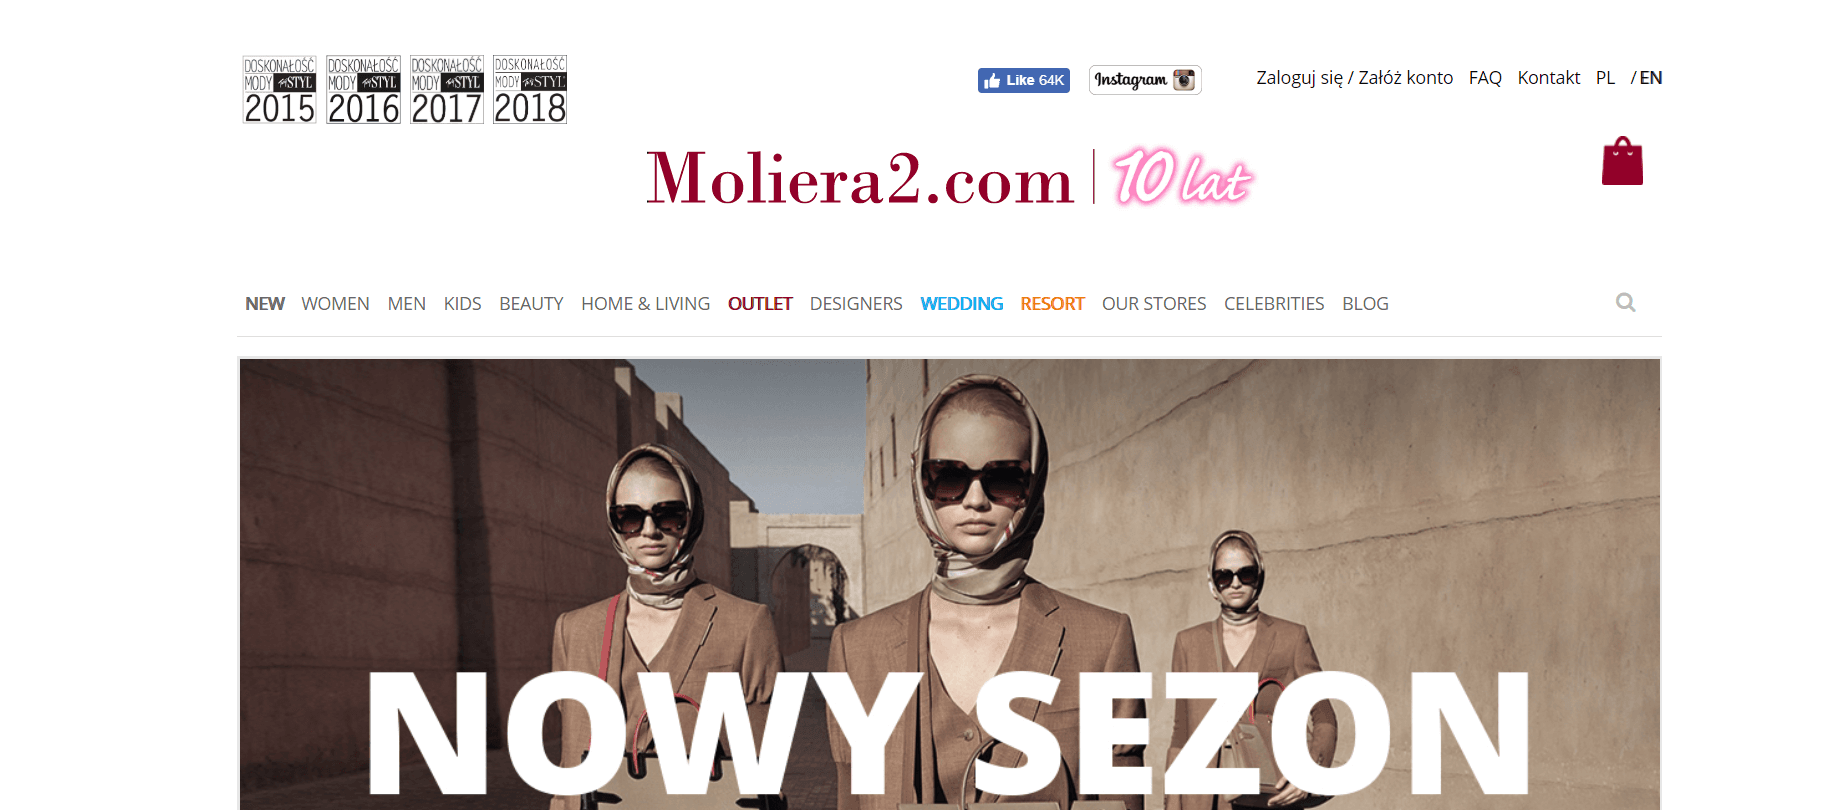 Moliera2 купить онлайн с доставкой в Казахстан - Meest Shopping - 2